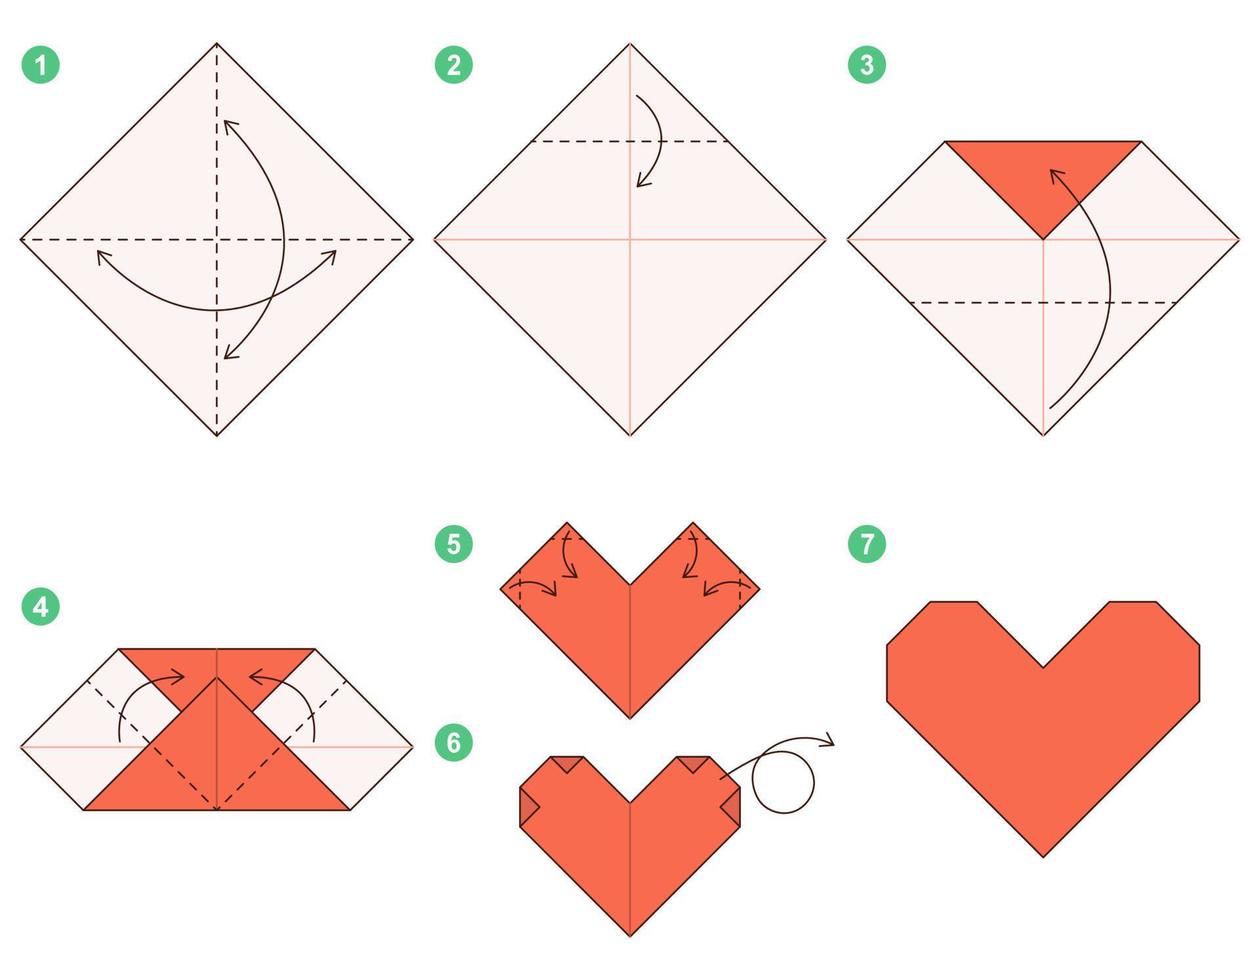 tutoriel de schéma d'origami coeur modèle mobile. origami pour les enfants. étape par étape comment faire un joli coeur en origami. illustration vectorielle. vecteur